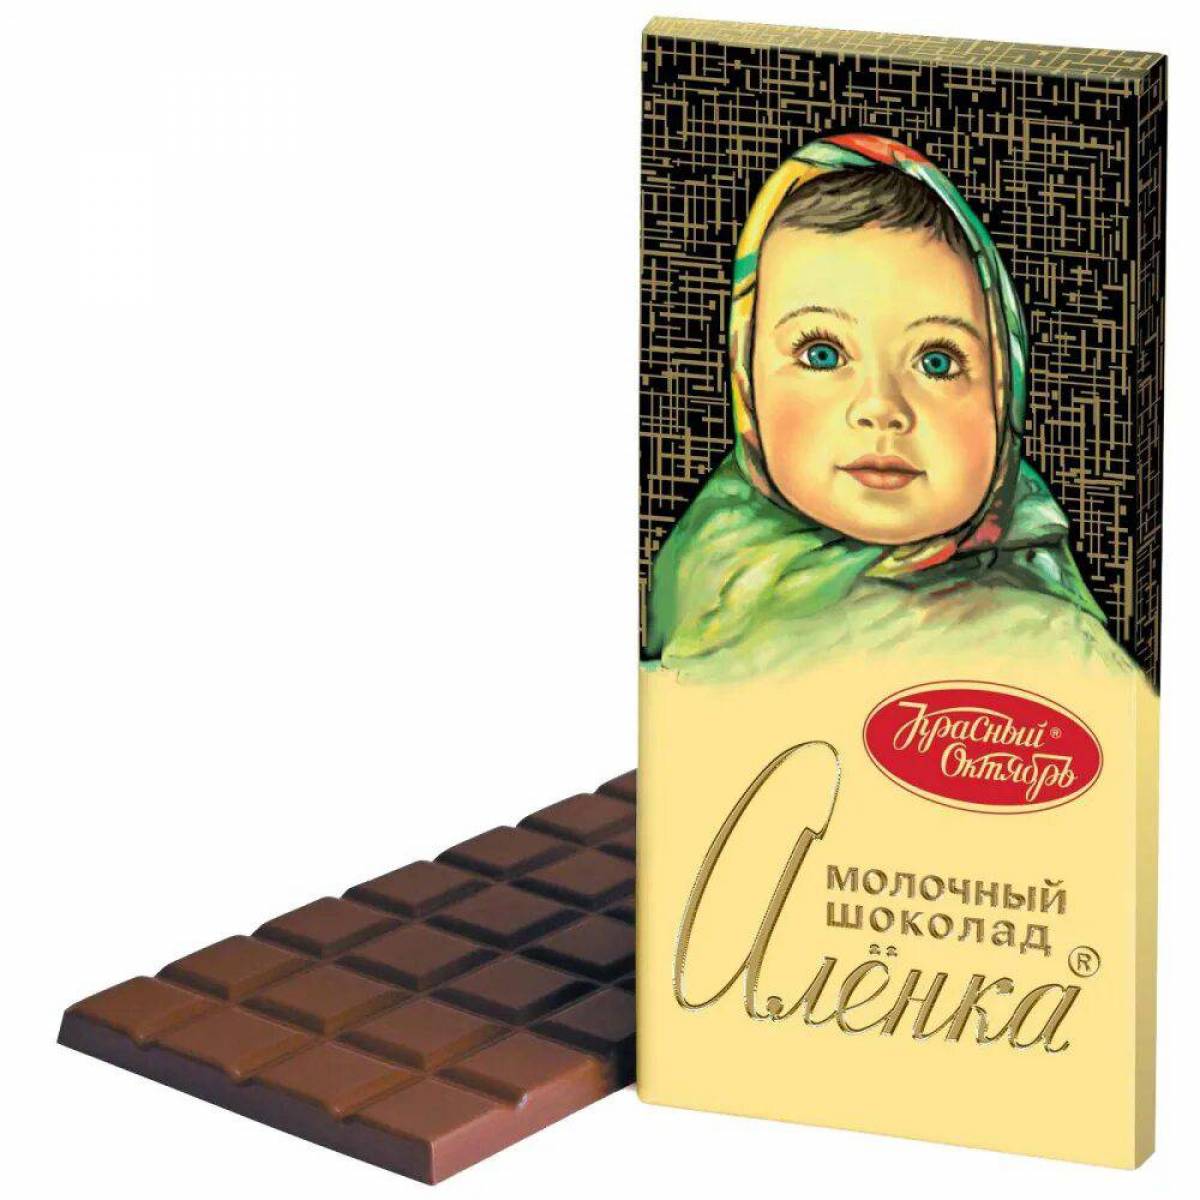 Шоколад аленка #39